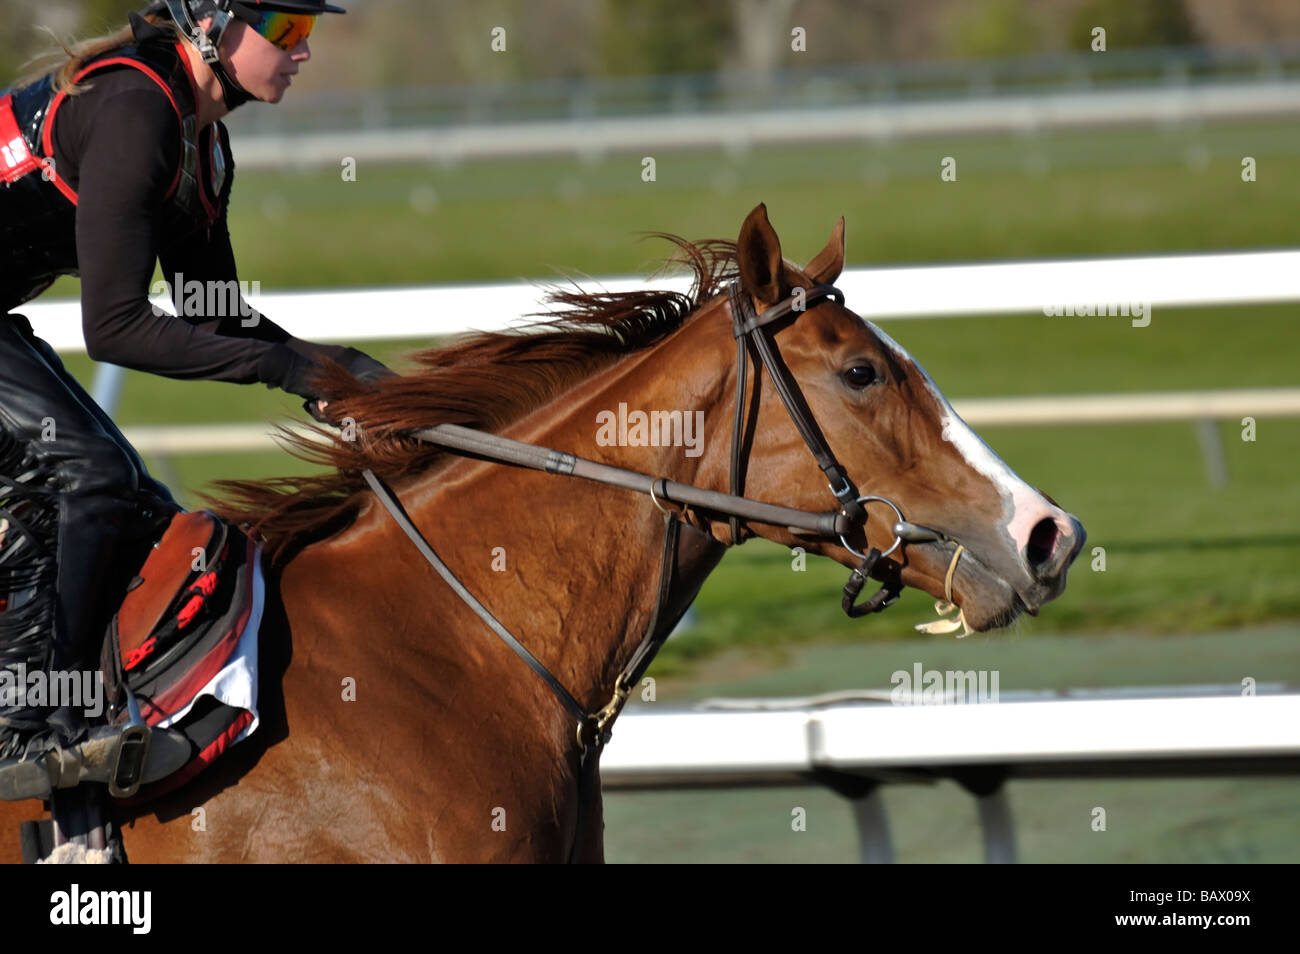 Thoroughbred horse and exercise jockey Stock Photo - Alamy